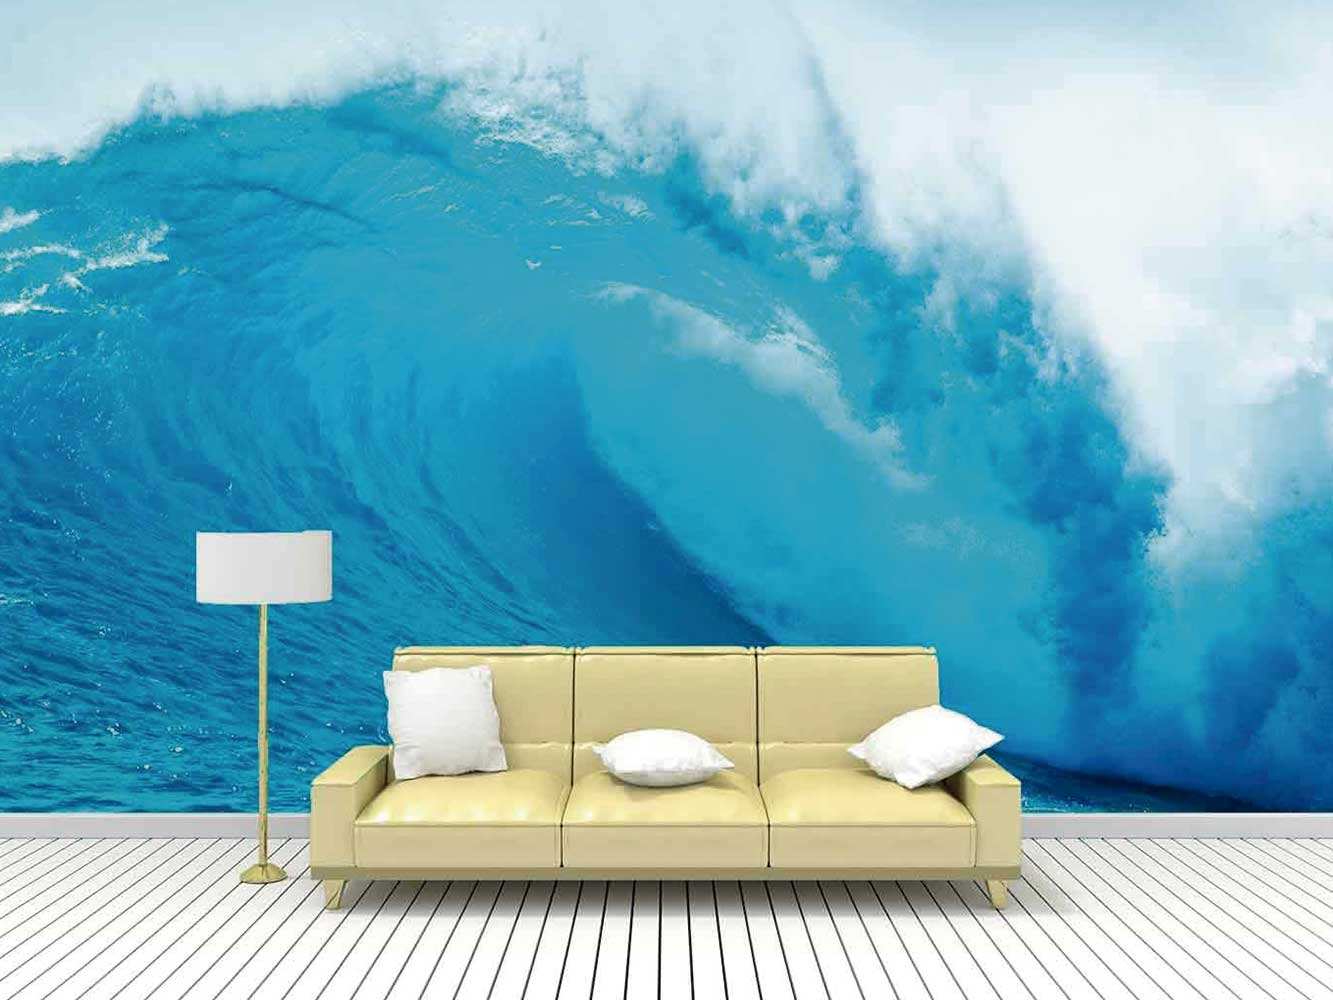 Papel pintado inspirado en las olas del mar en tonos azules